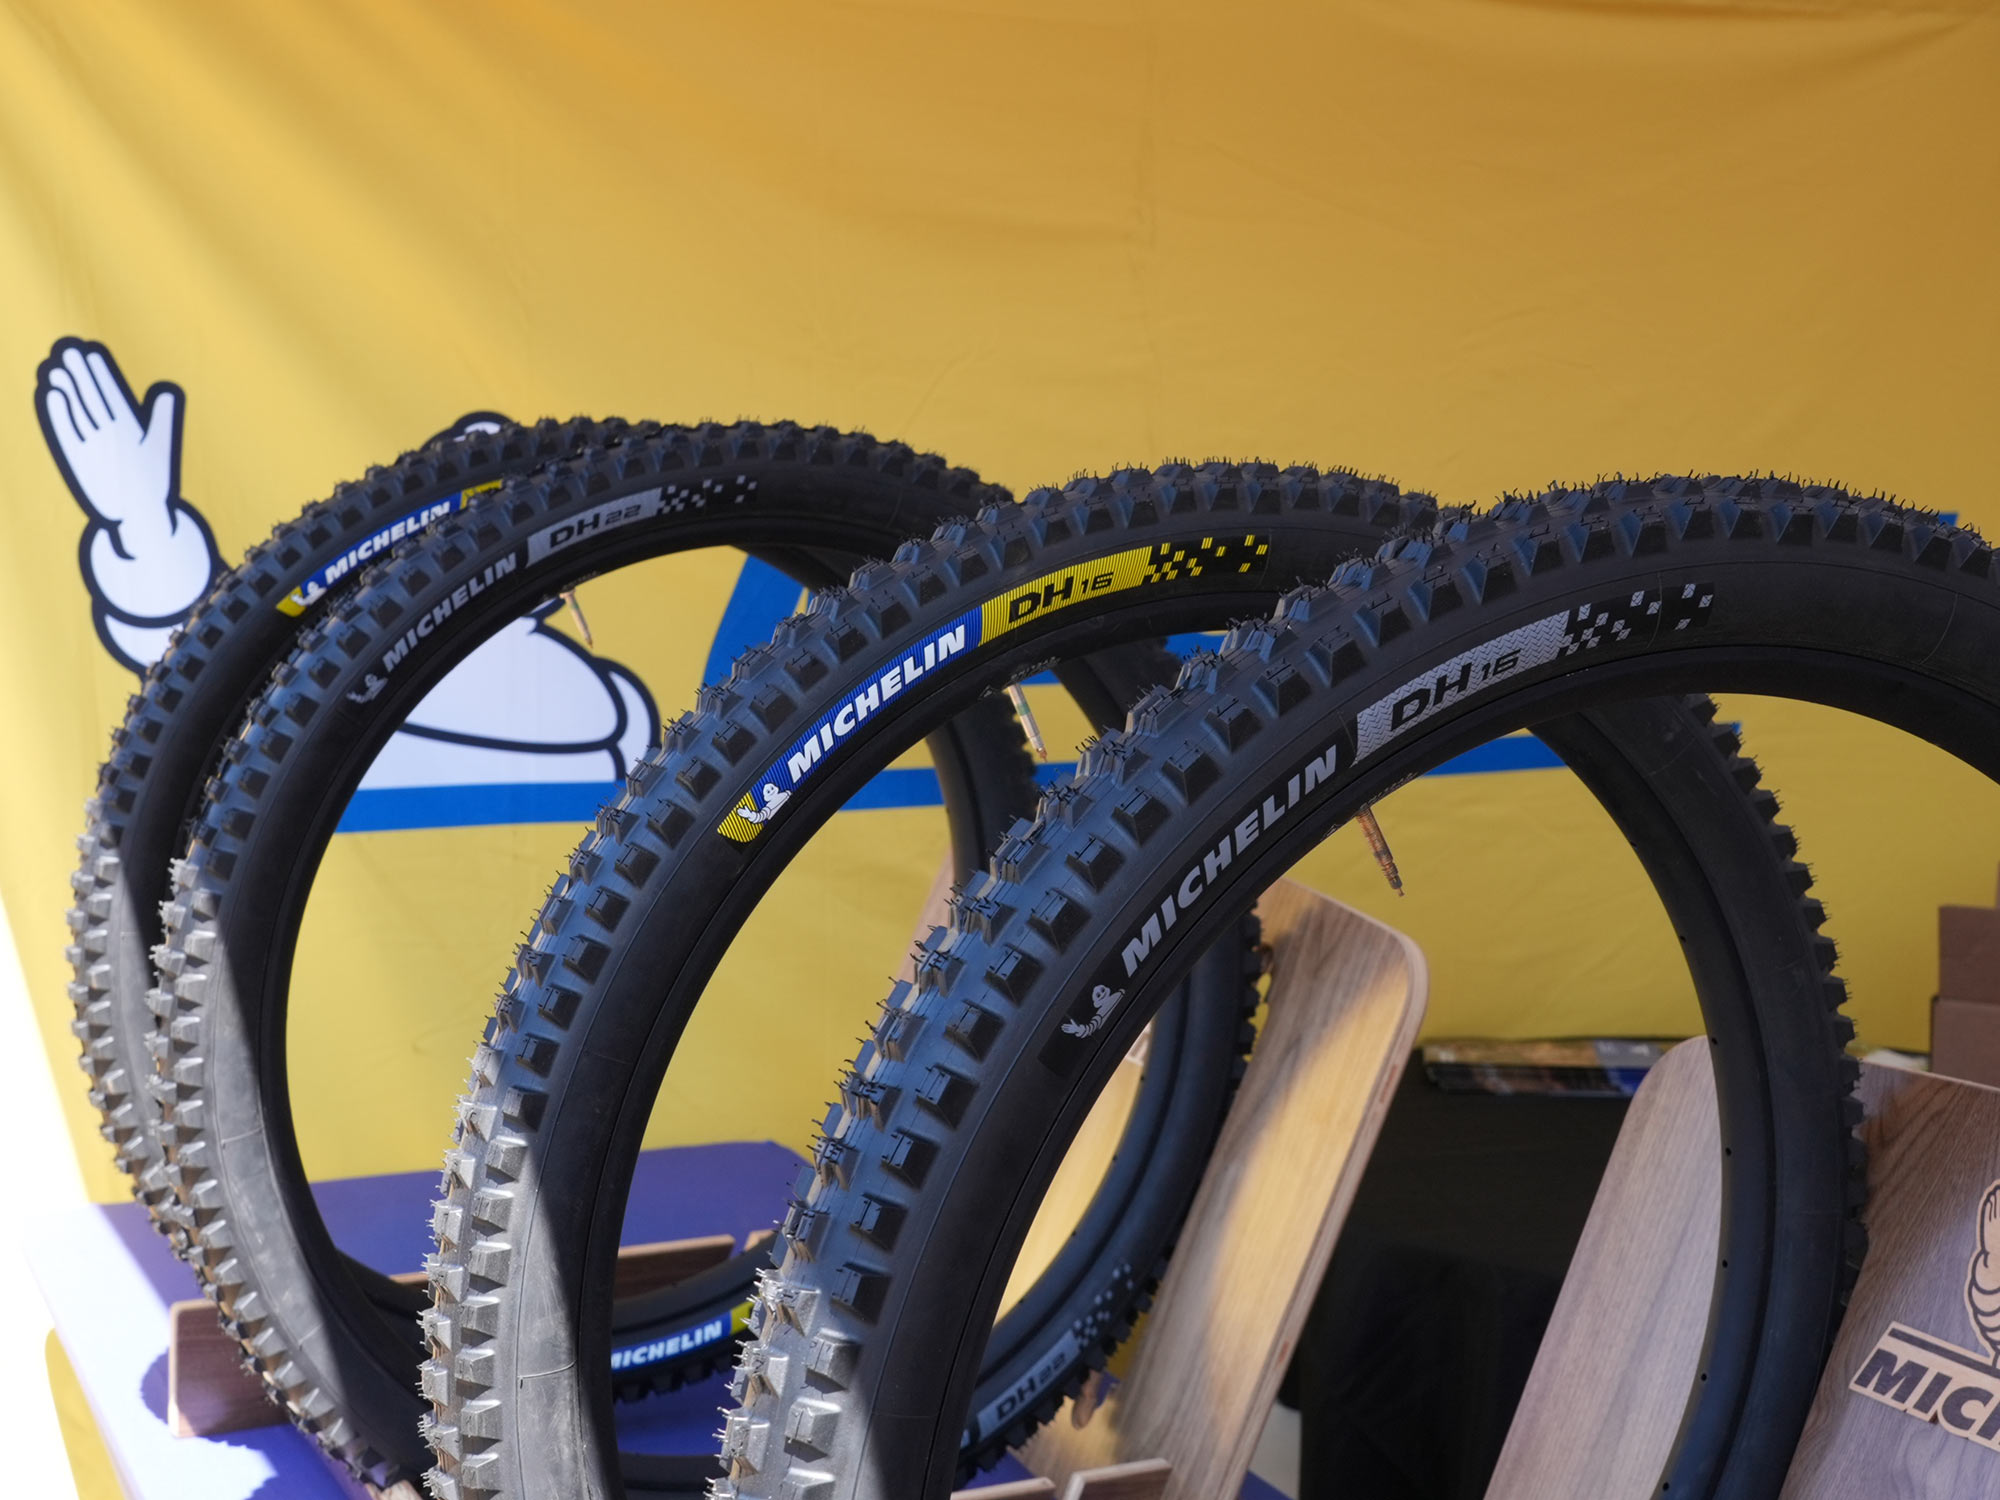 Los nuevos neumáticos Michelin DH son más rápidos, con mayor agarre y 160 g más ligeros